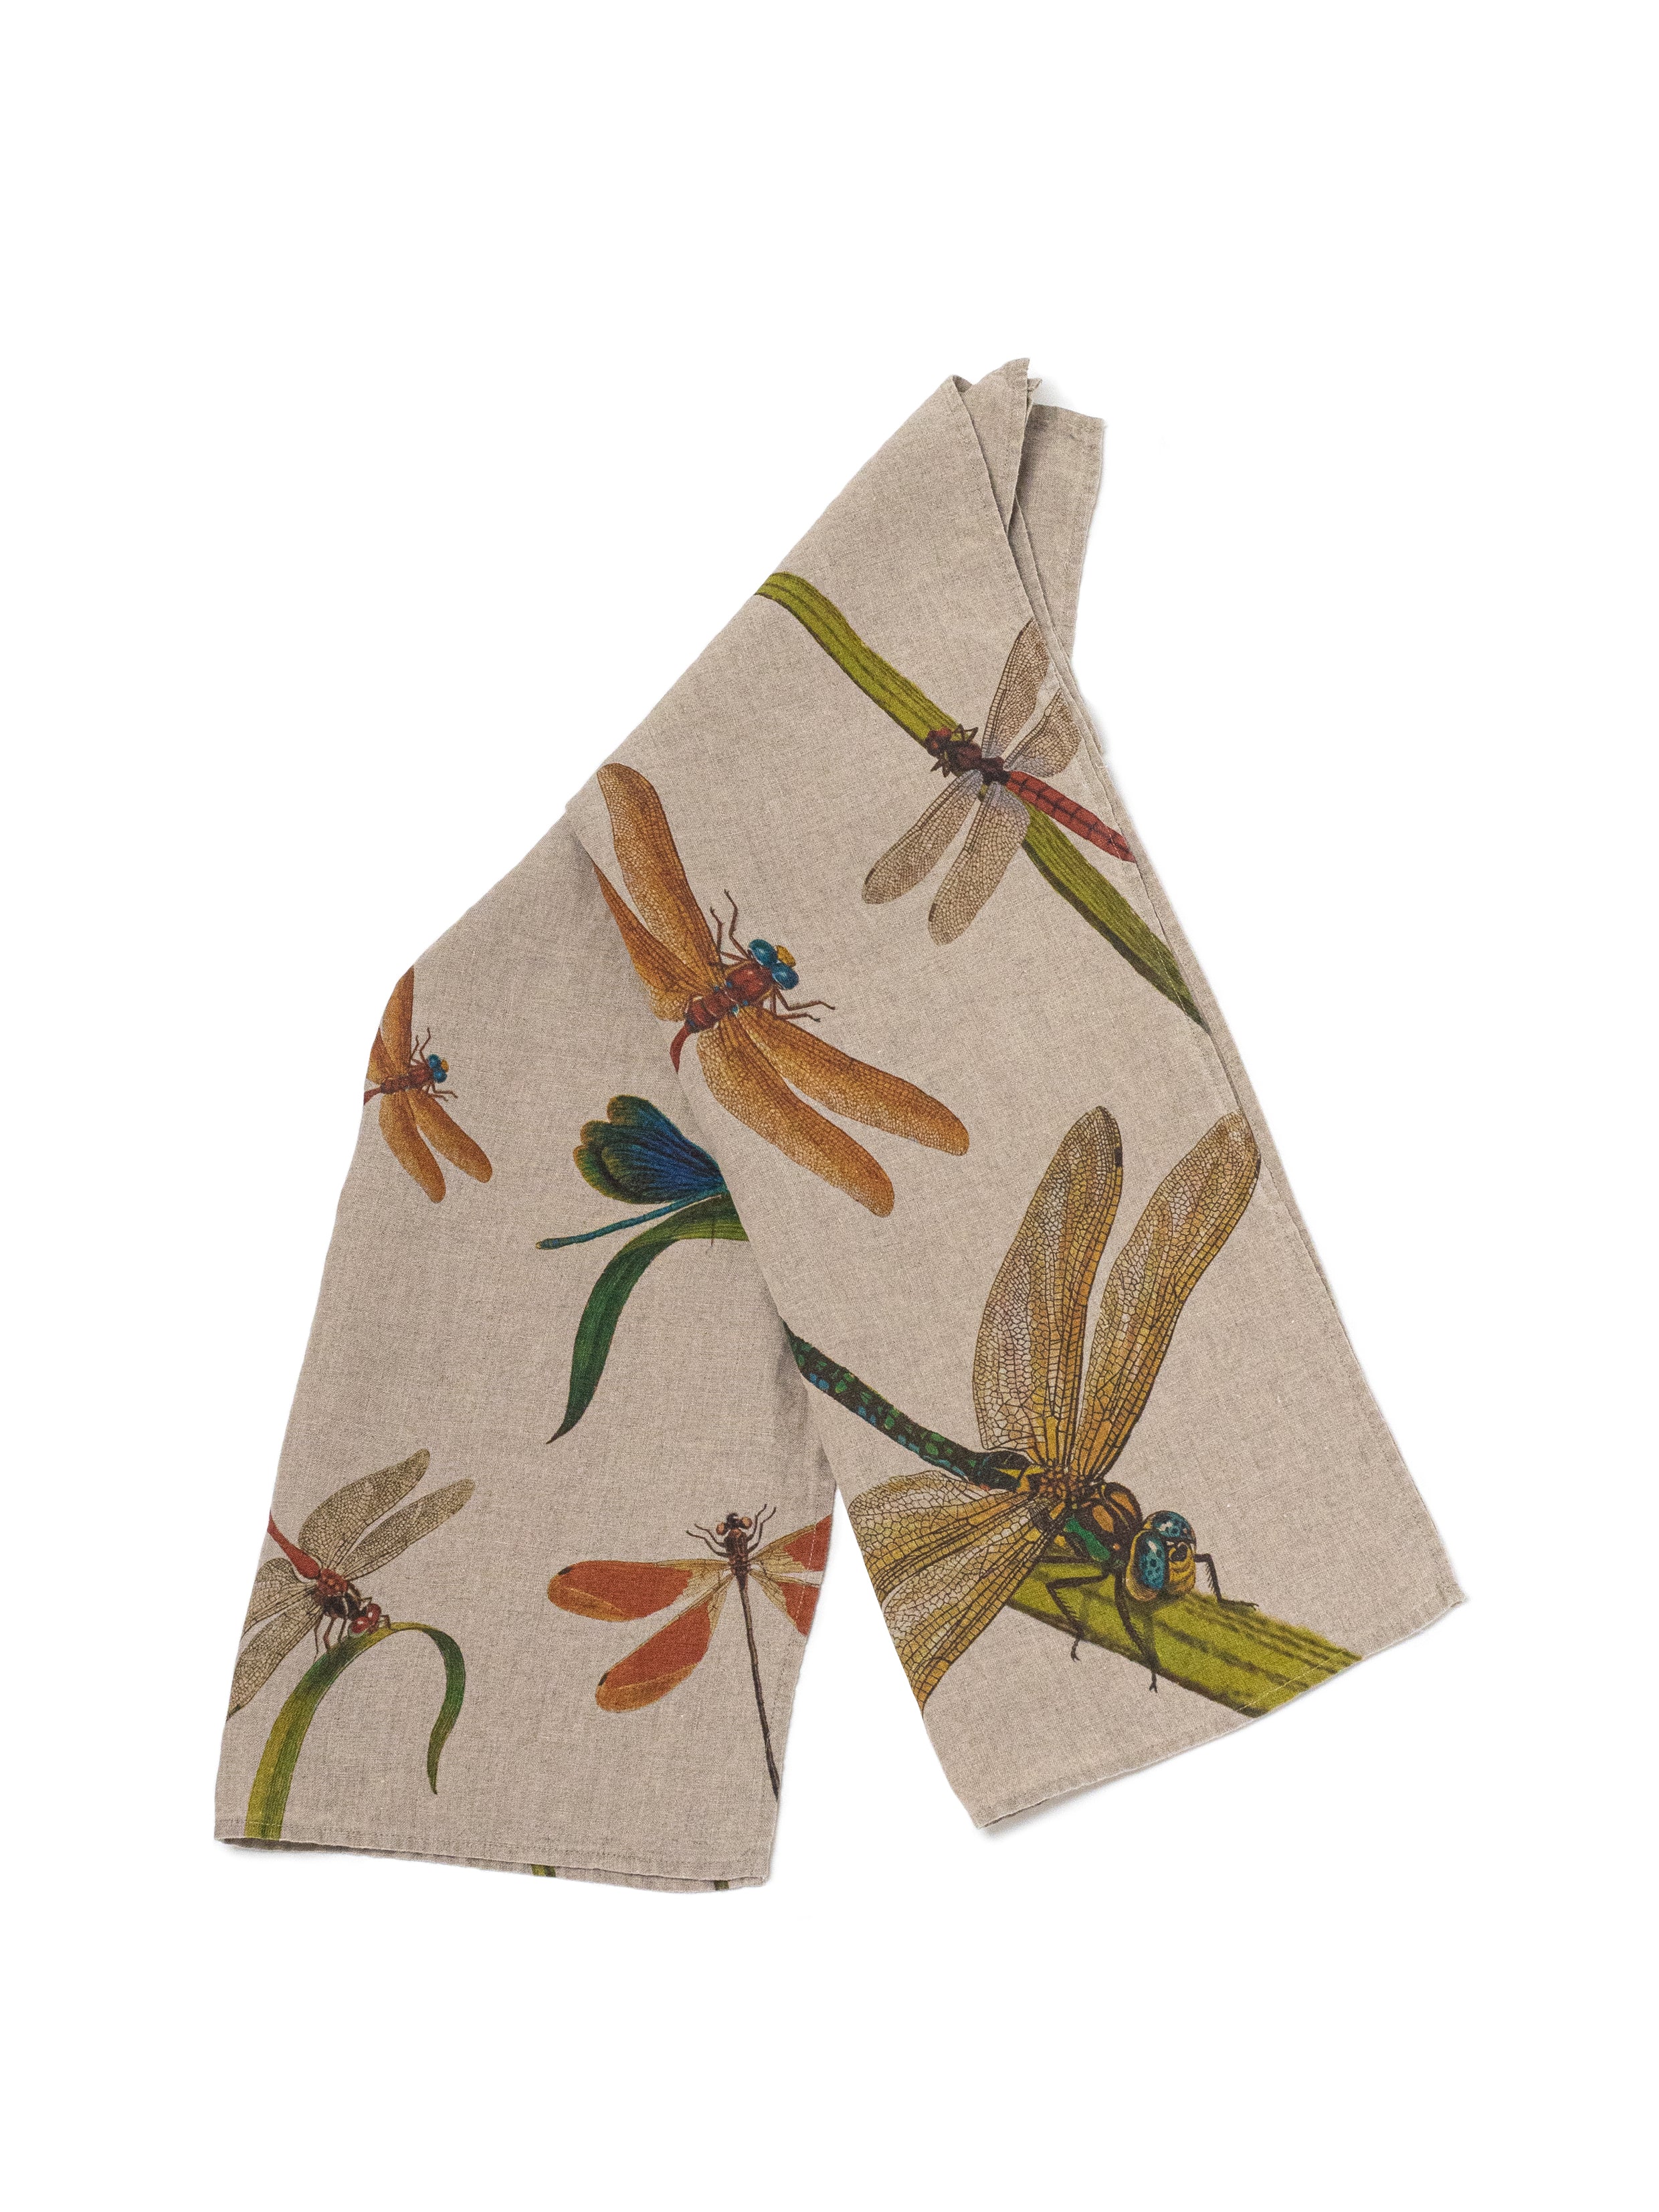 The Linoroom “Lakeside Dragonflies,” Pair of linen printed tea towels.